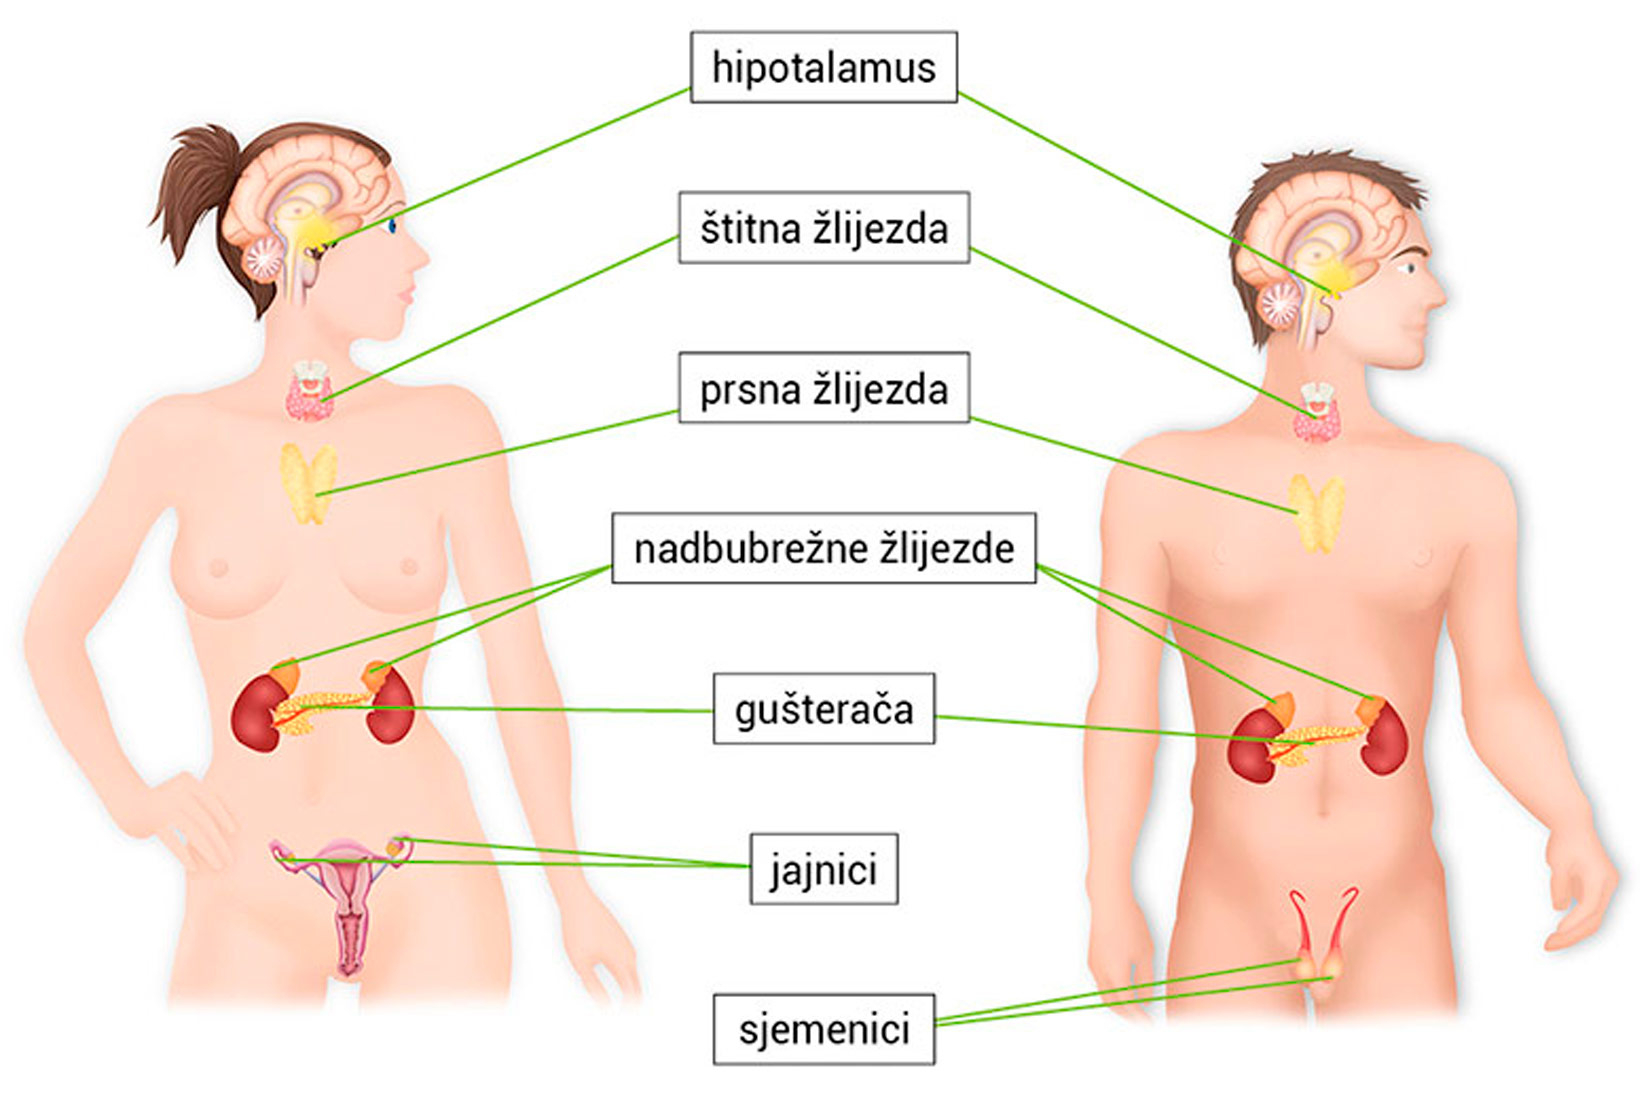 Prikazana je slika muškarca i žene te njihove žlijezde s unutrašnjim lučenjem. Zajedničke su: hipotalamus, štitna žlijezda, prsna žlijezda, nadbubrežne, gušterača, a različite: jajnici kod žena i sjemenici kod muškaraca.